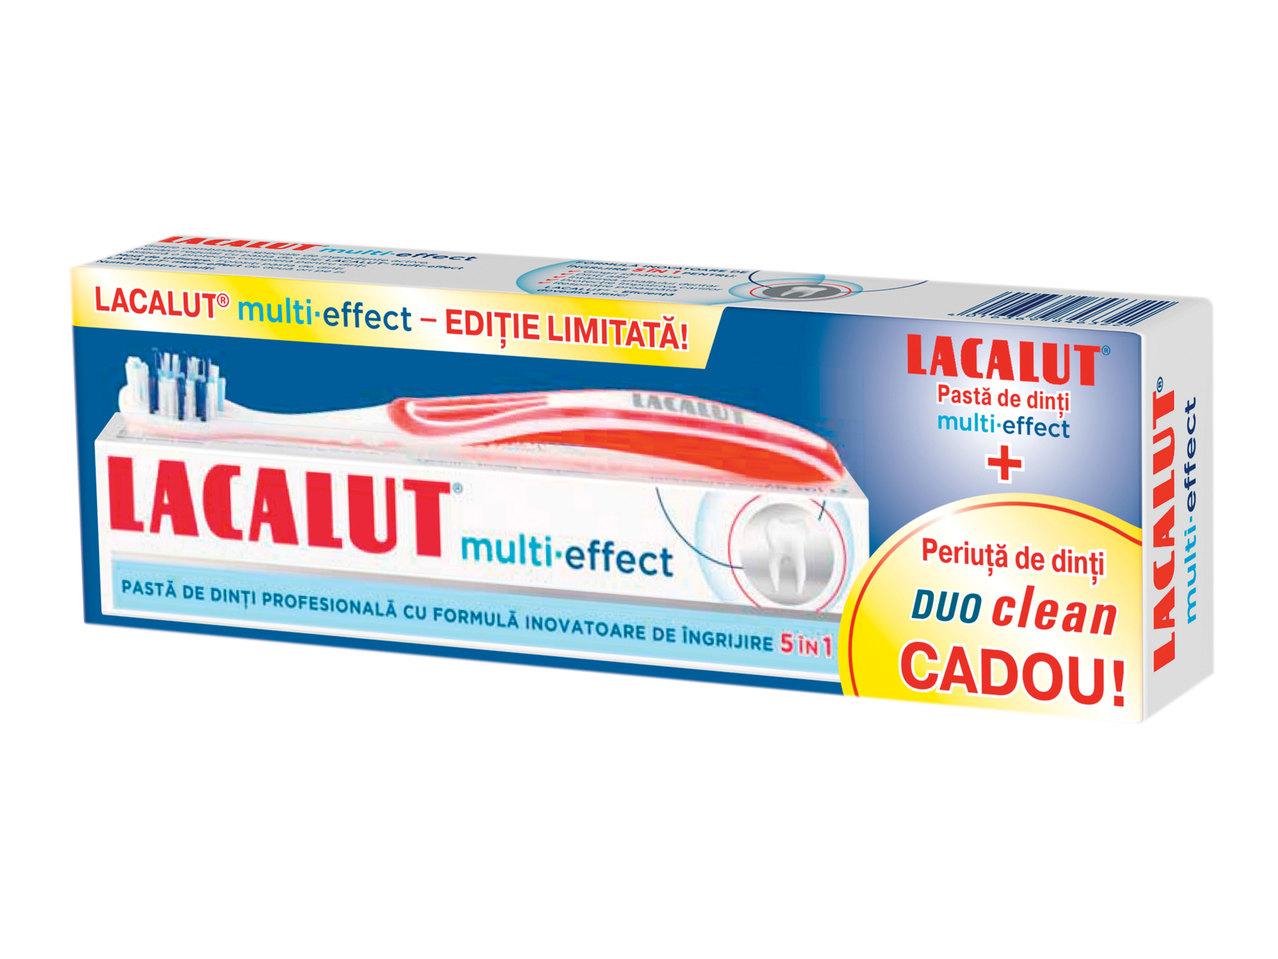 Pastă de dinți multi-efect + periuță de dinți duo clean CADOU